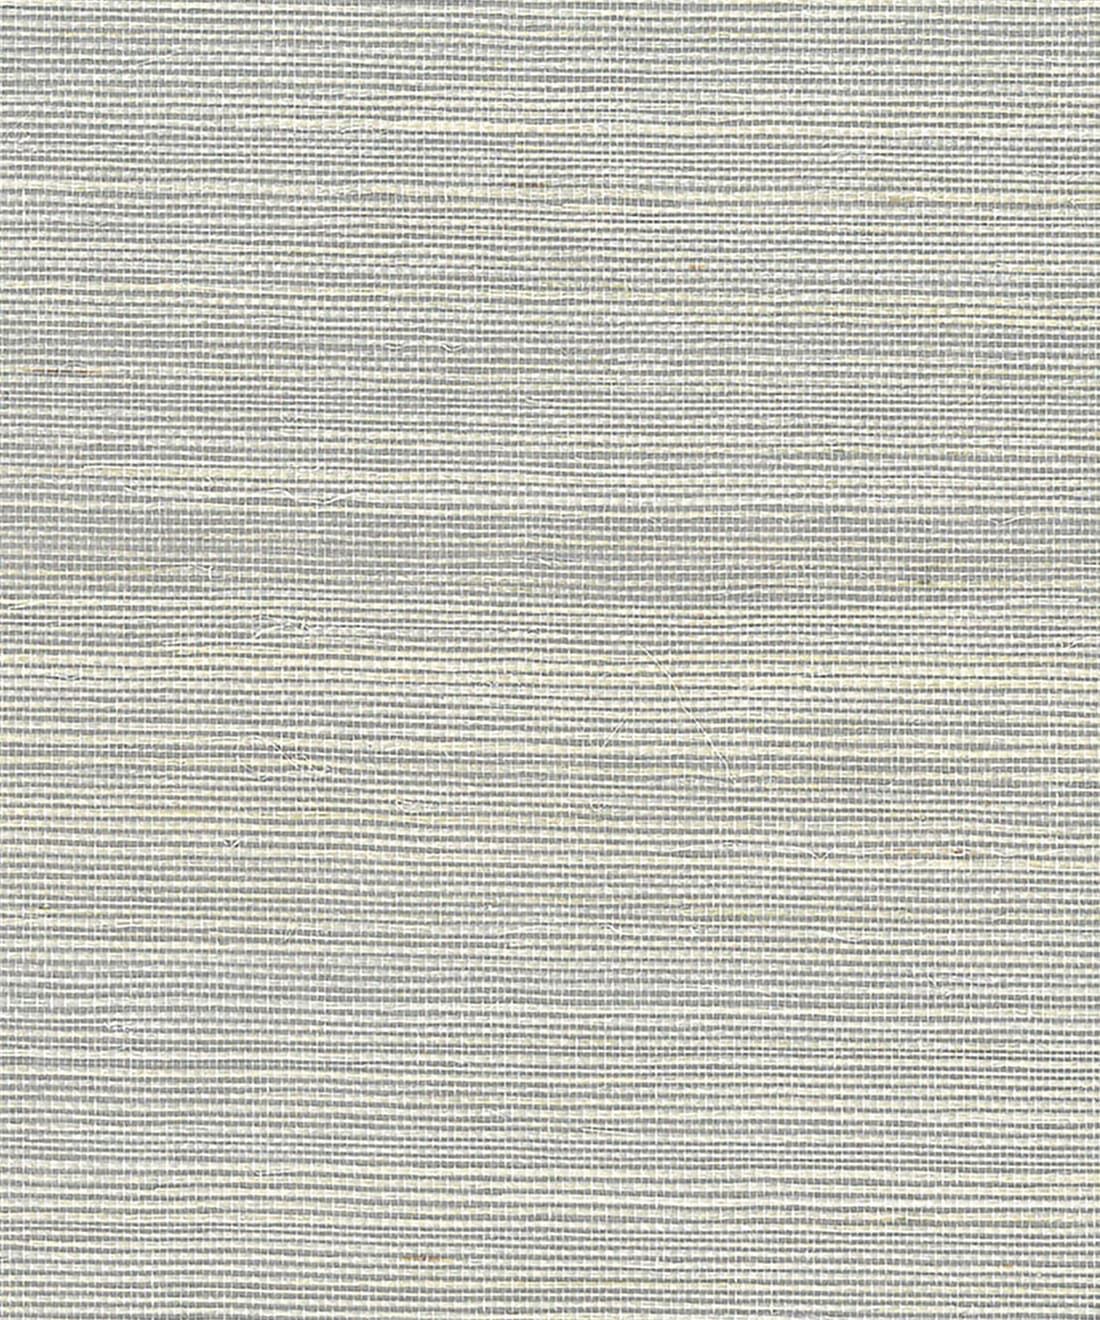 Summer Sisal Grasscloth Wallpaper - Grey